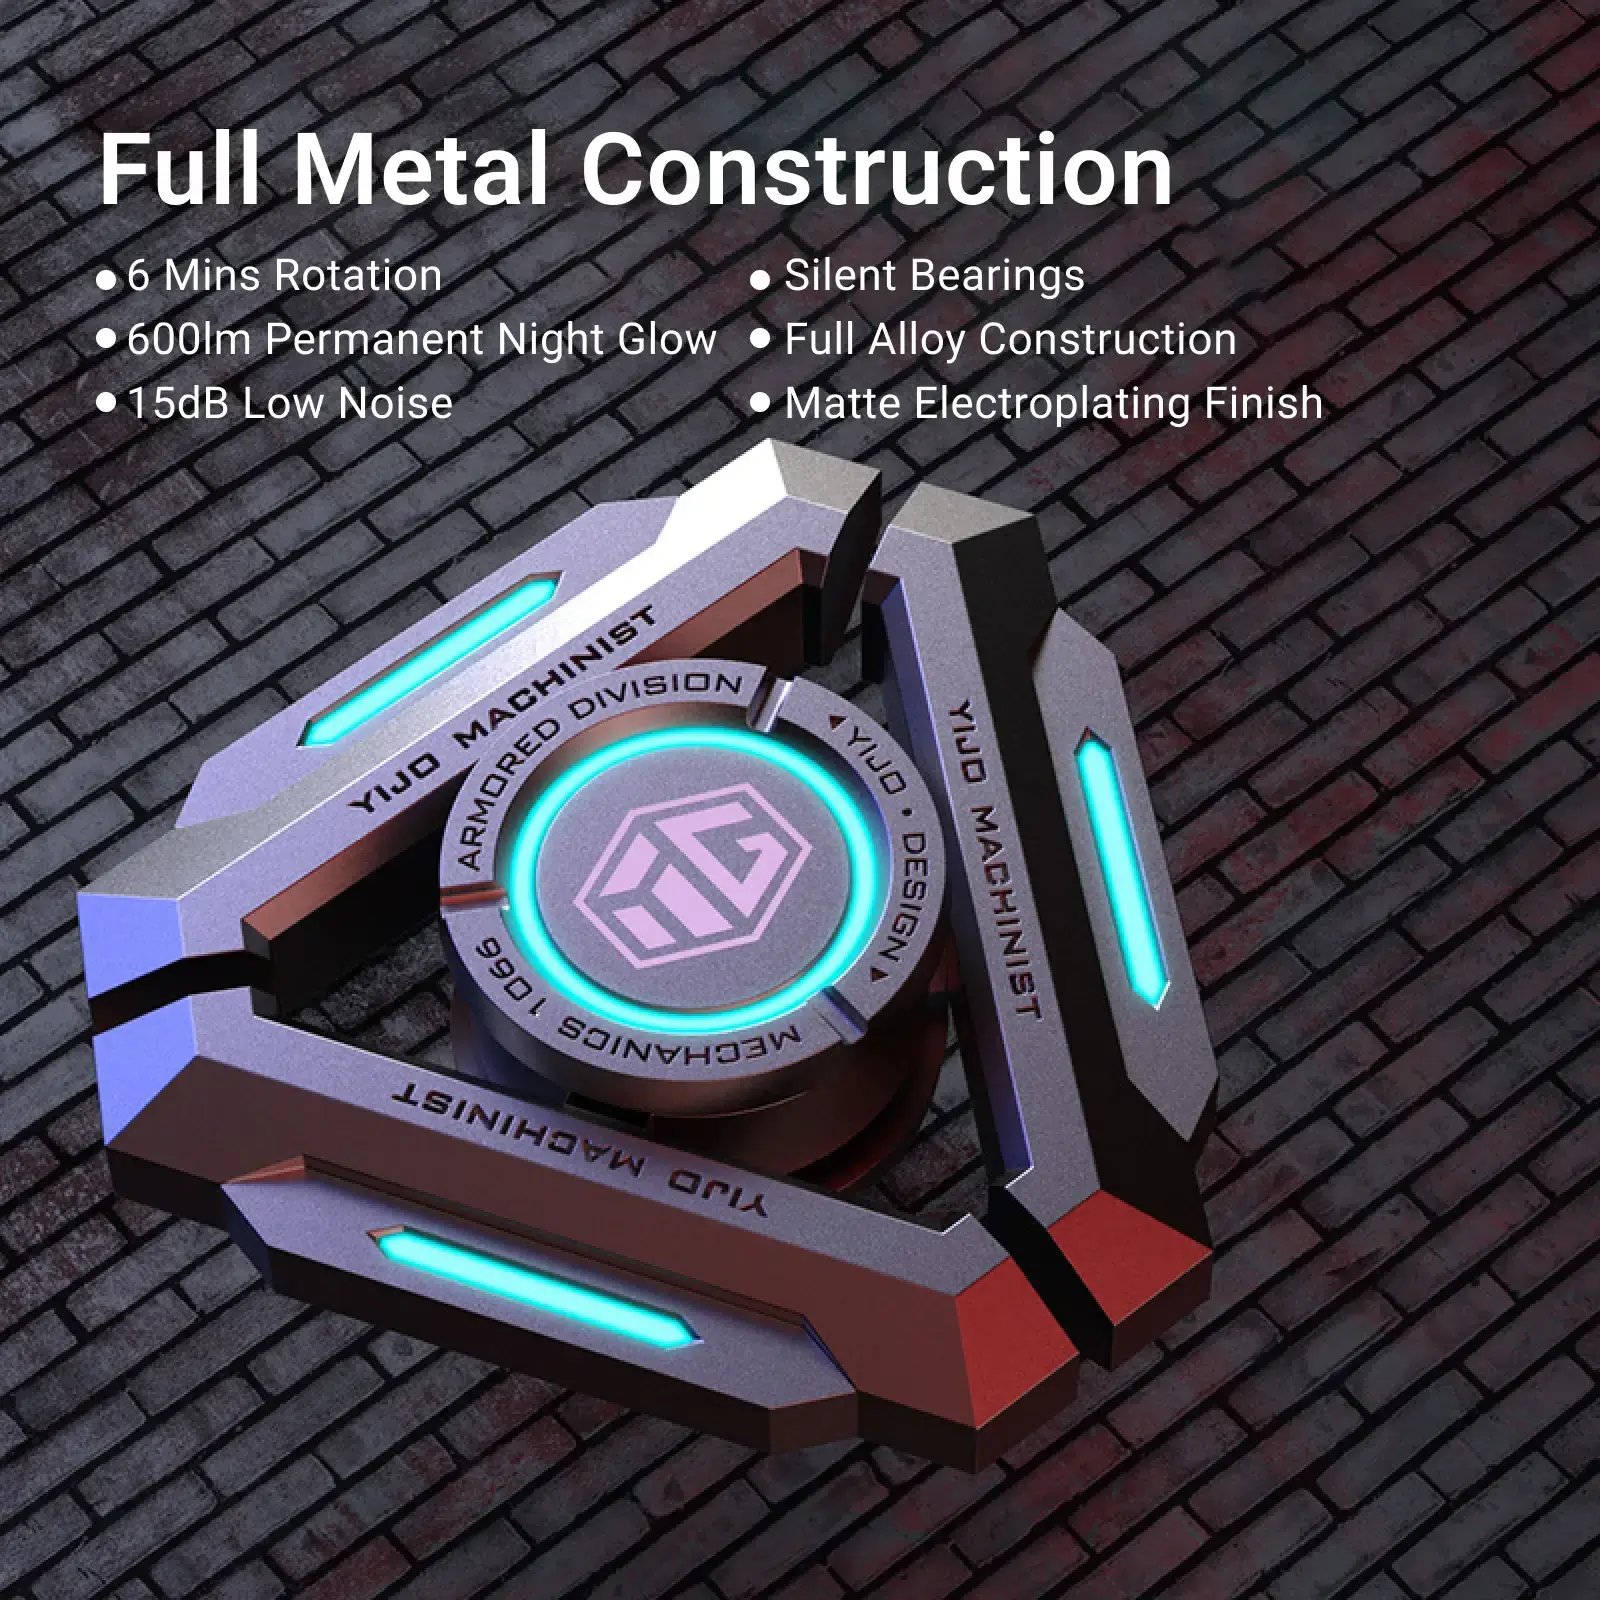 xCool ForFun Metal Sensory Fidget Toy Set